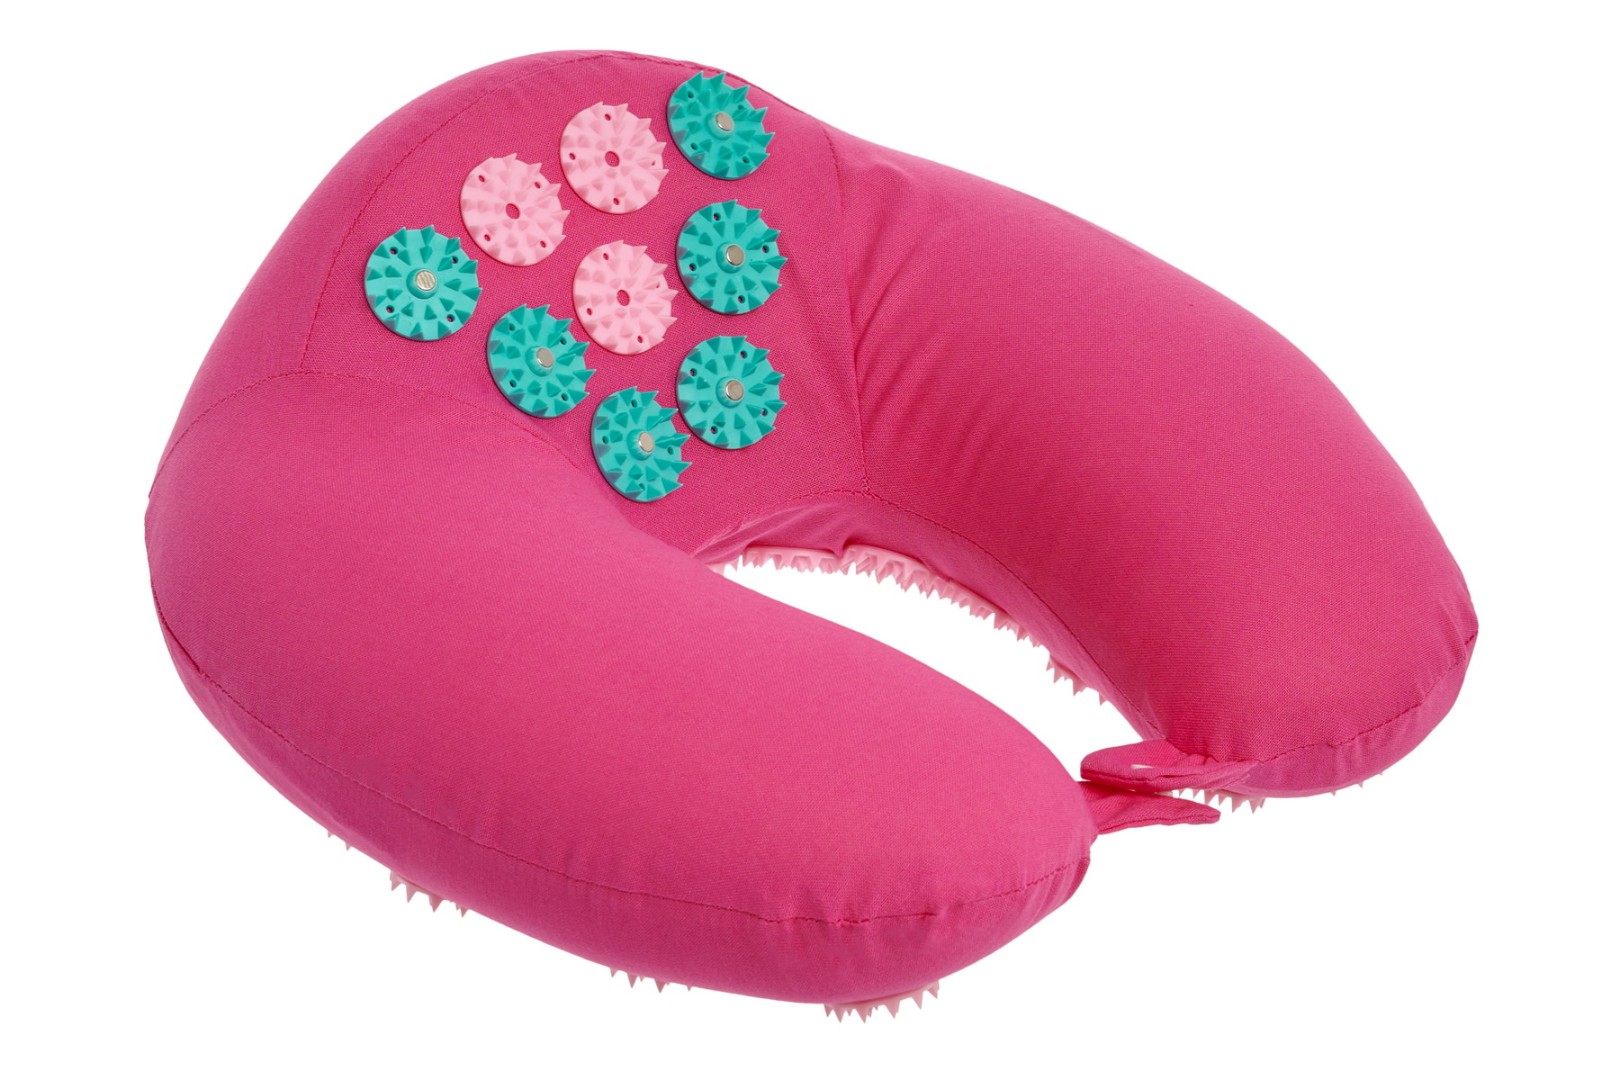 Подушка дорожная акупунктурная Нирвана с магнитами, розовая